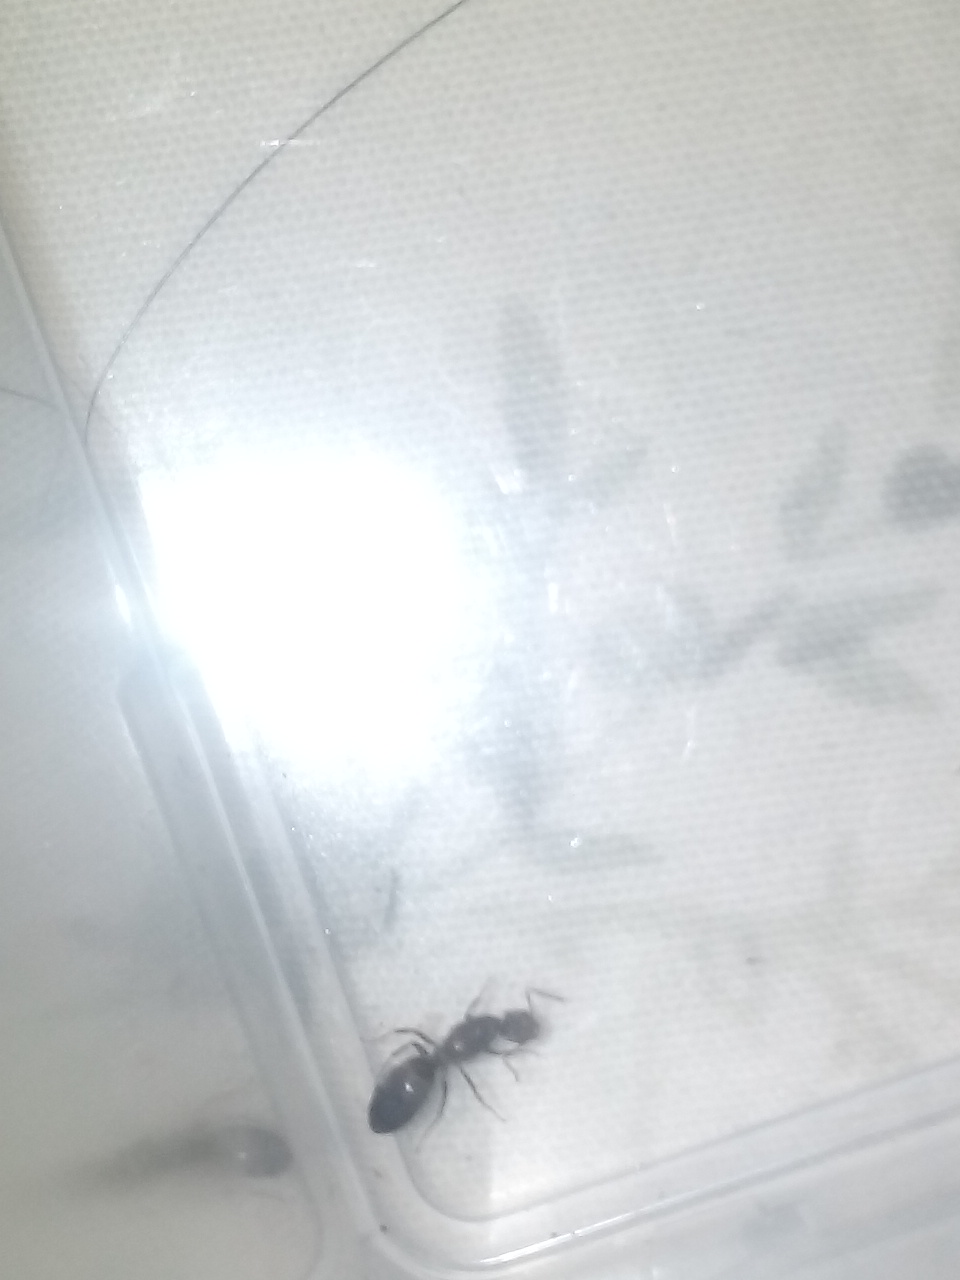 Que es esta hormiga????